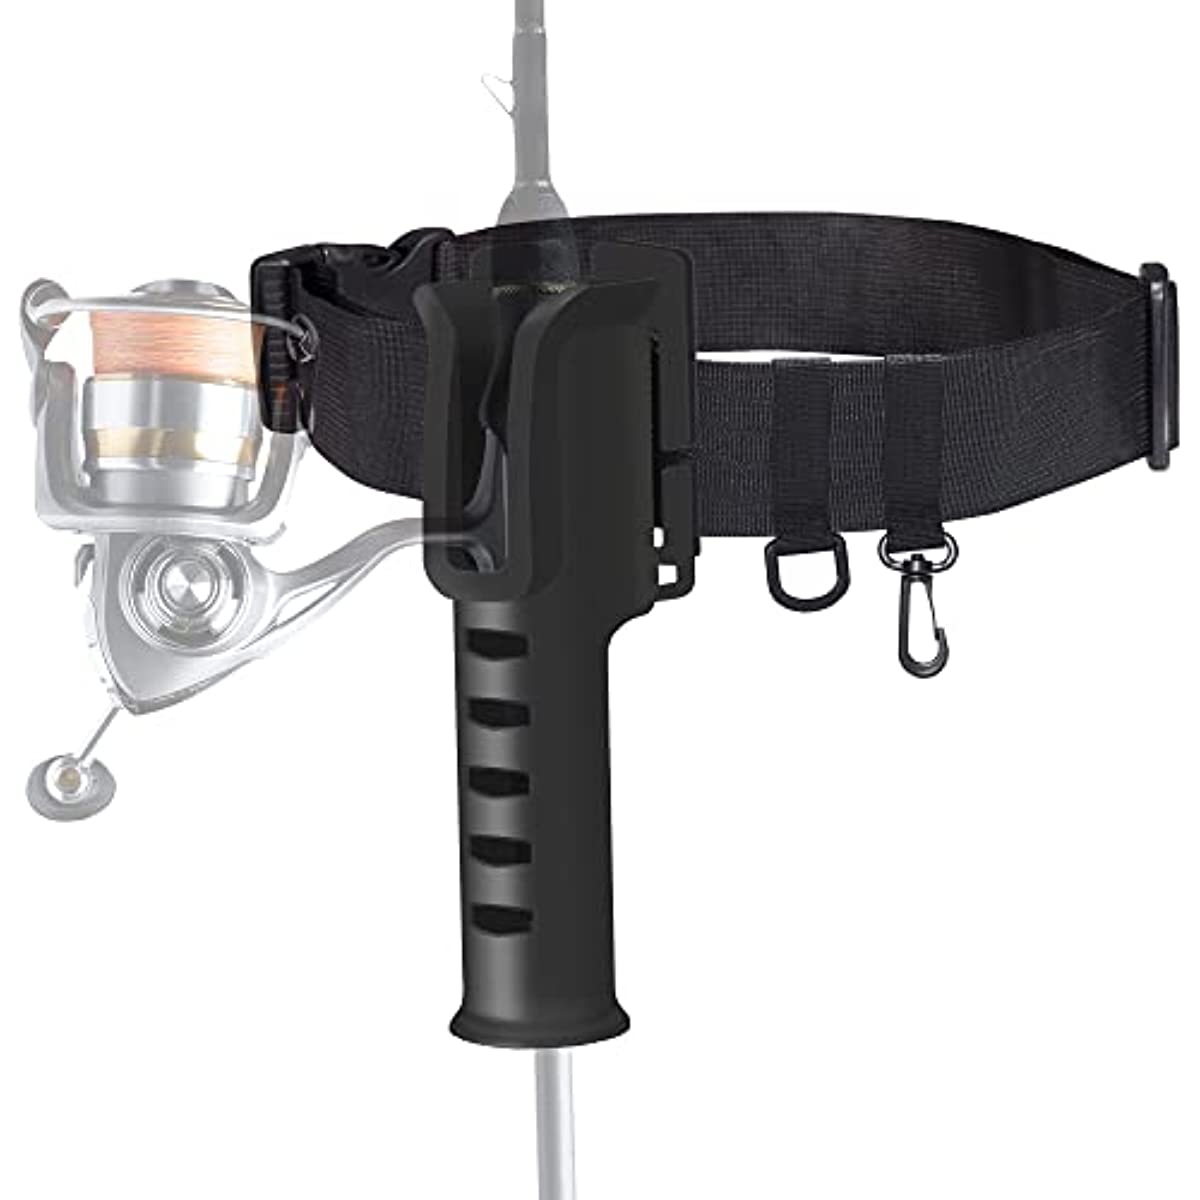 Fishing Rod Holder Belt - Adjustable Waist Wading Belts for Men